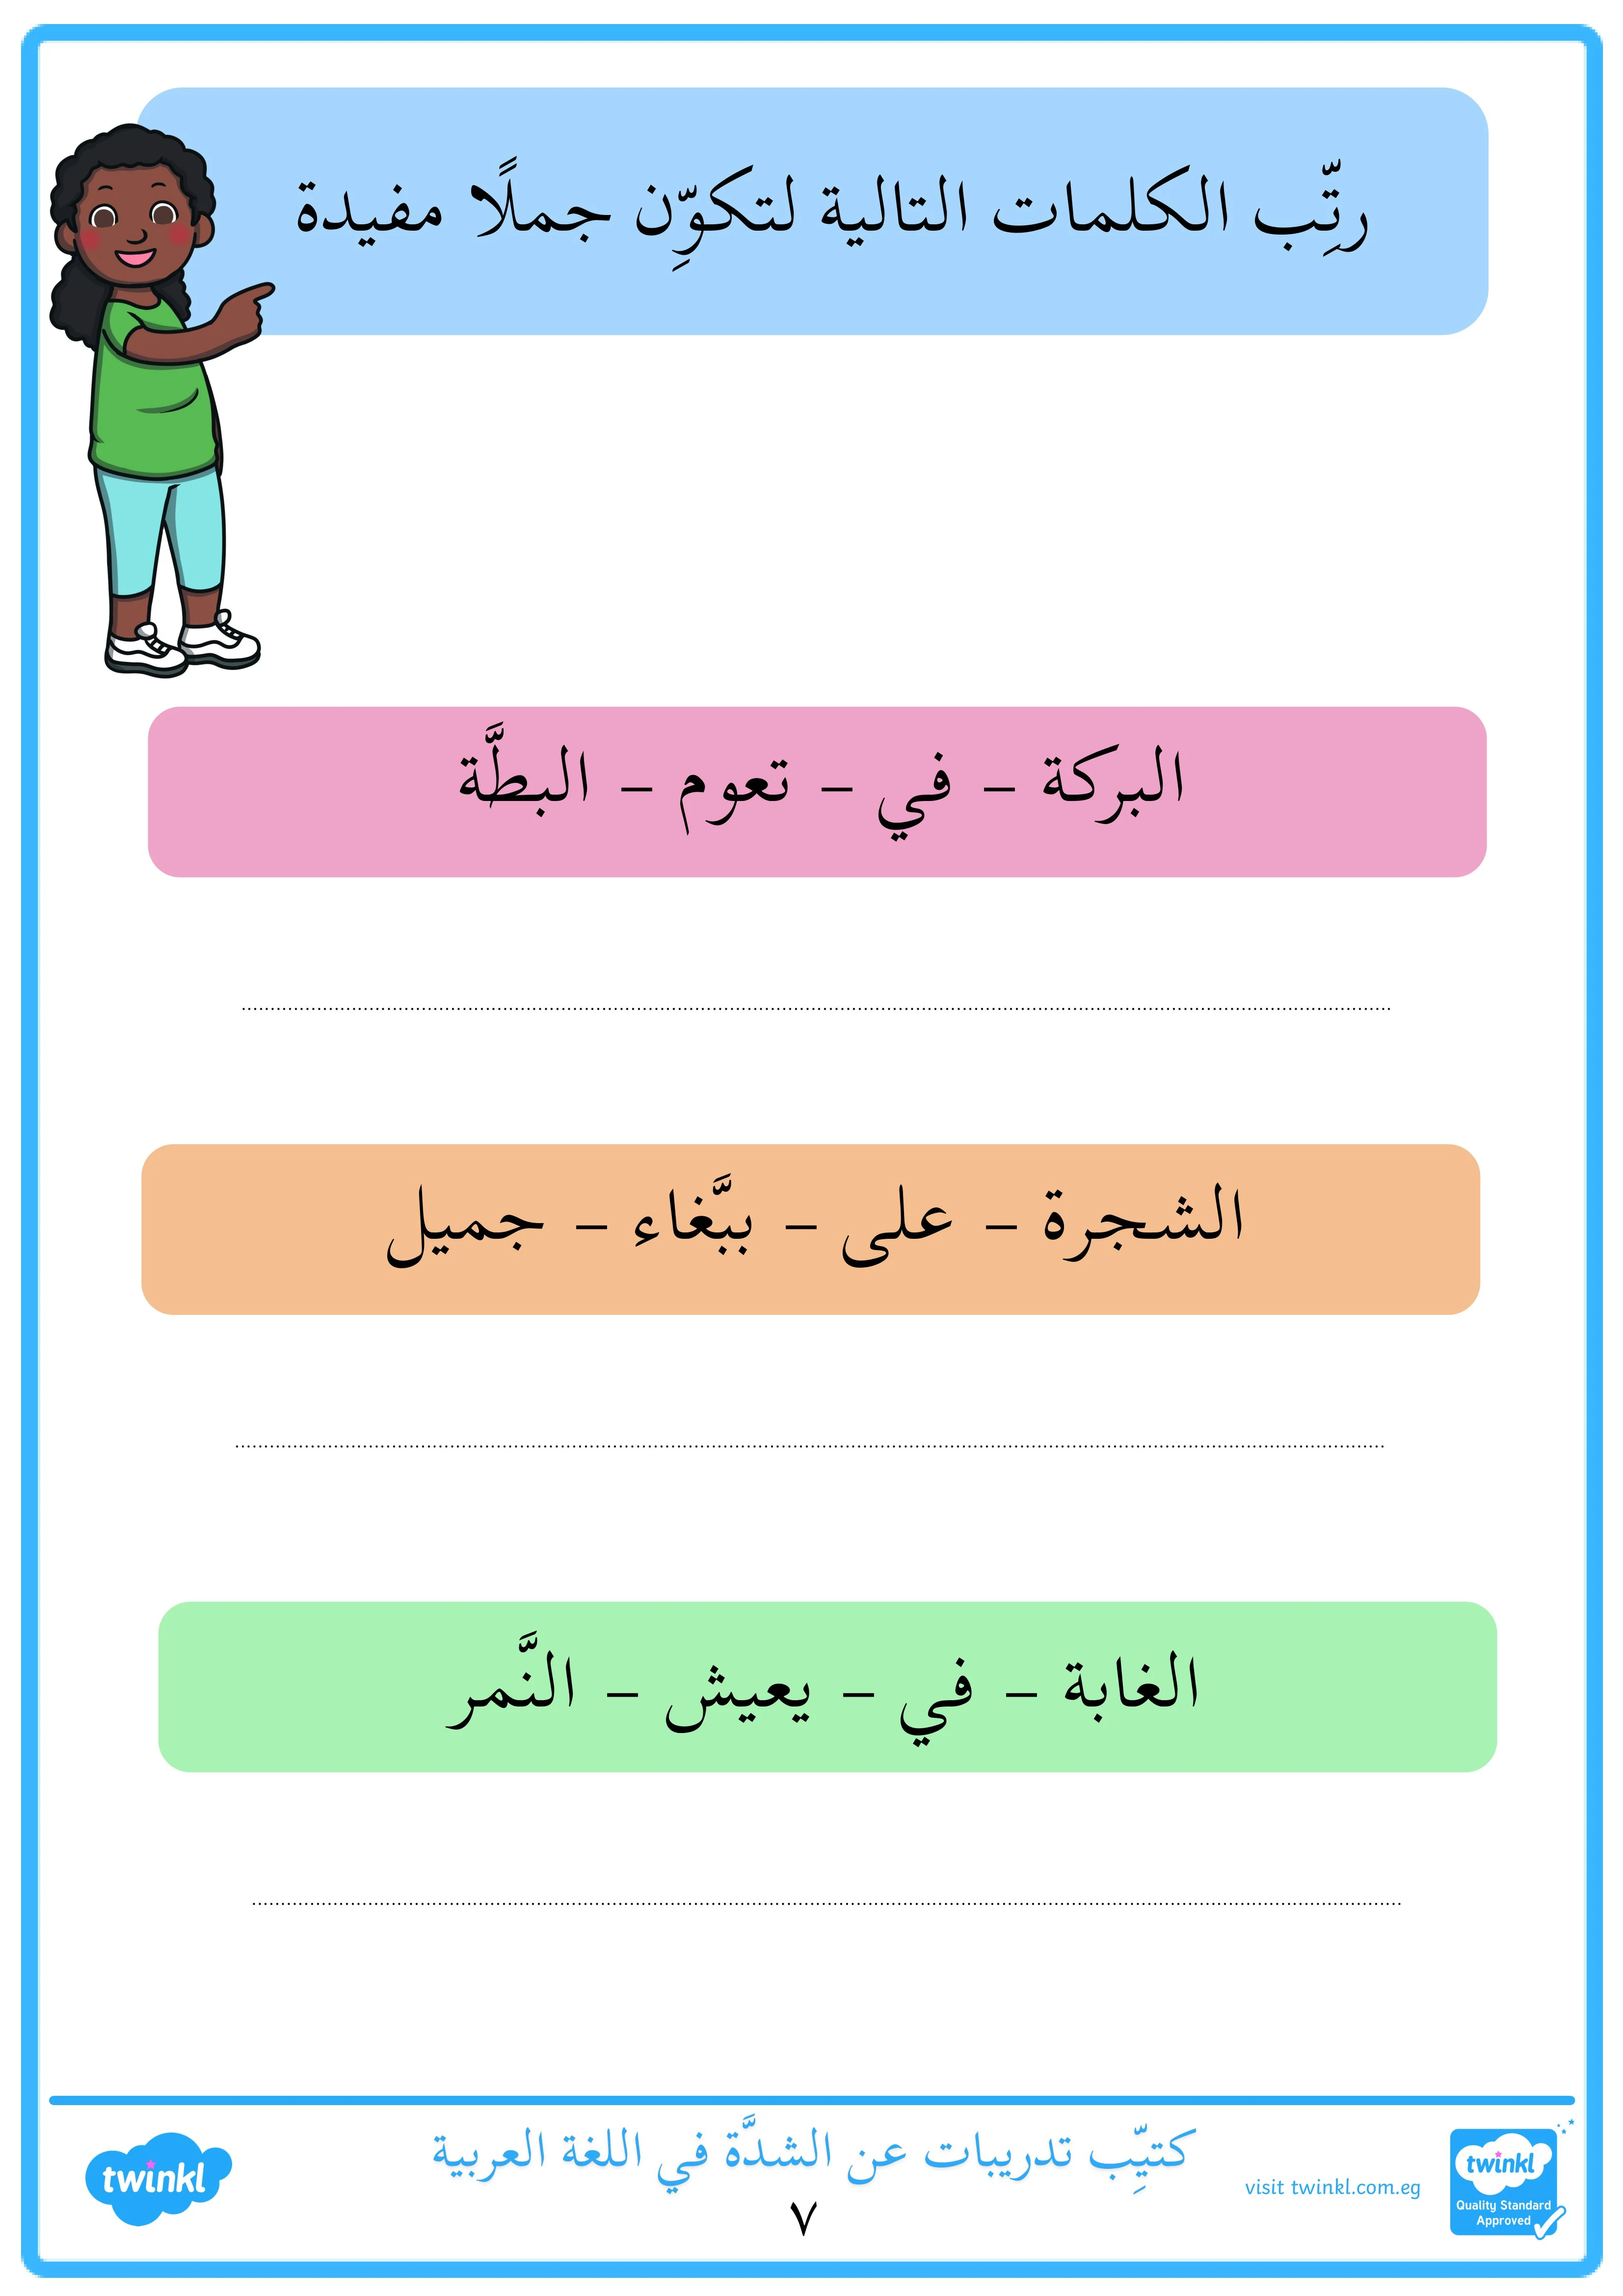 كتيب تدريبات عن الشدة في اللغة العربية pdf تحميل مباشر مجاني